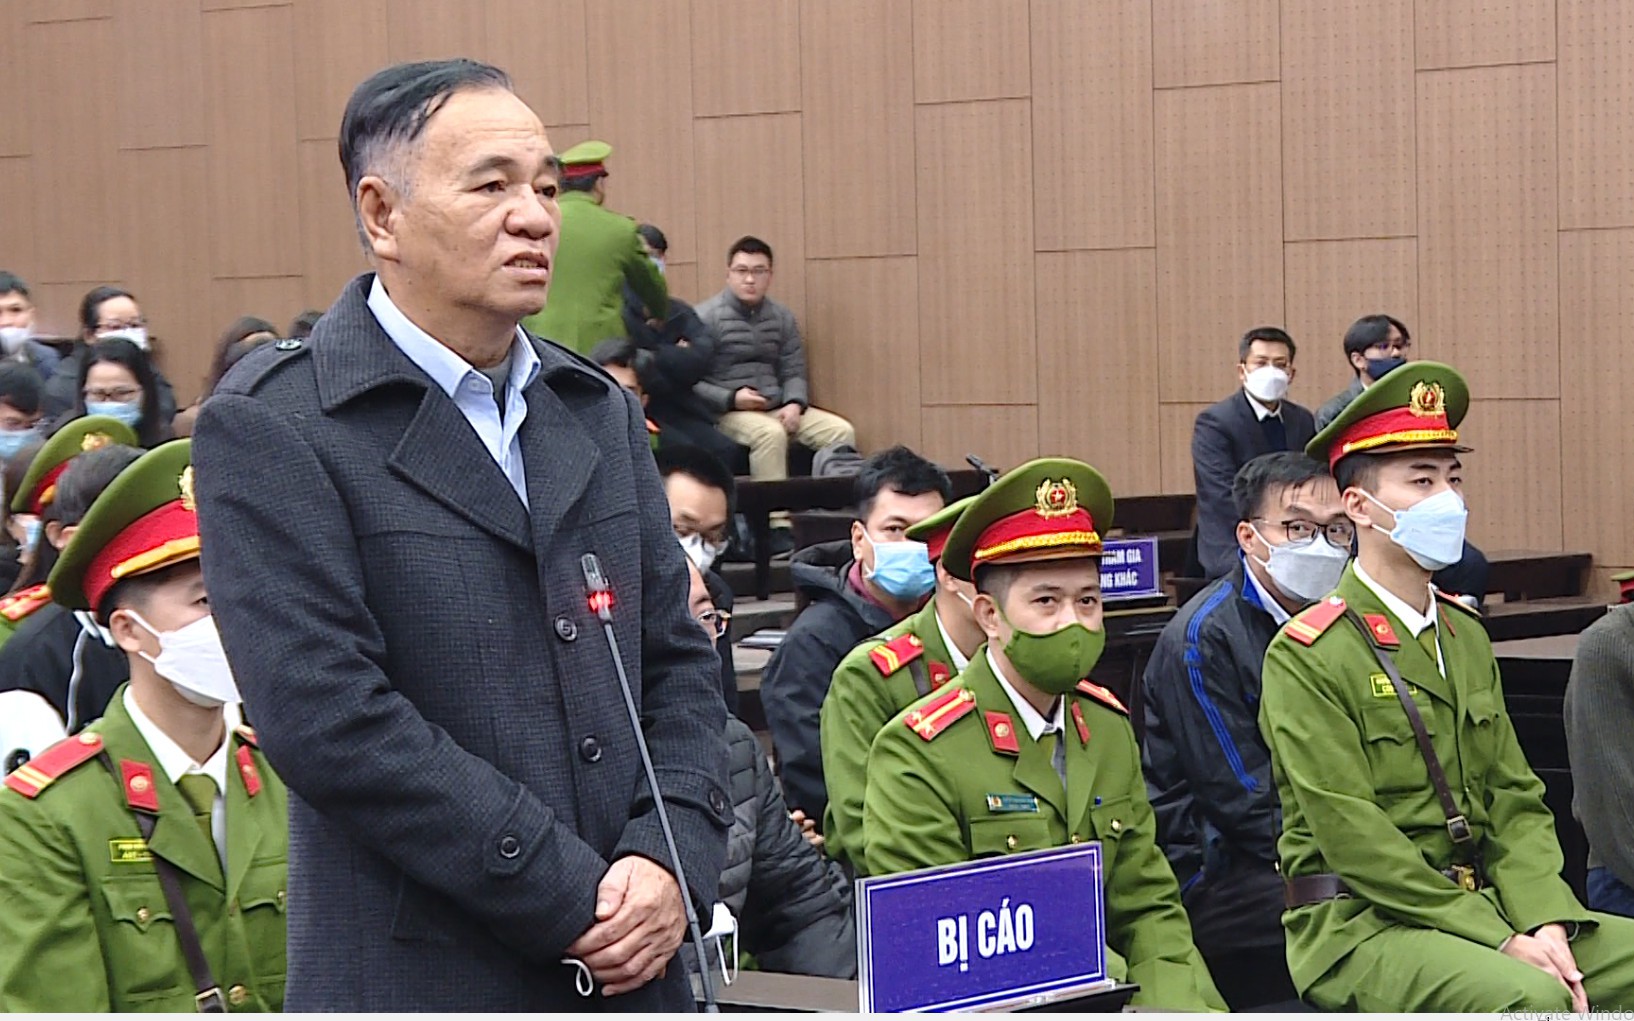 Phạt tù cựu Bí thư, Chủ tịch Đồng Nai vì nhận hối lộ của Công ty AIC